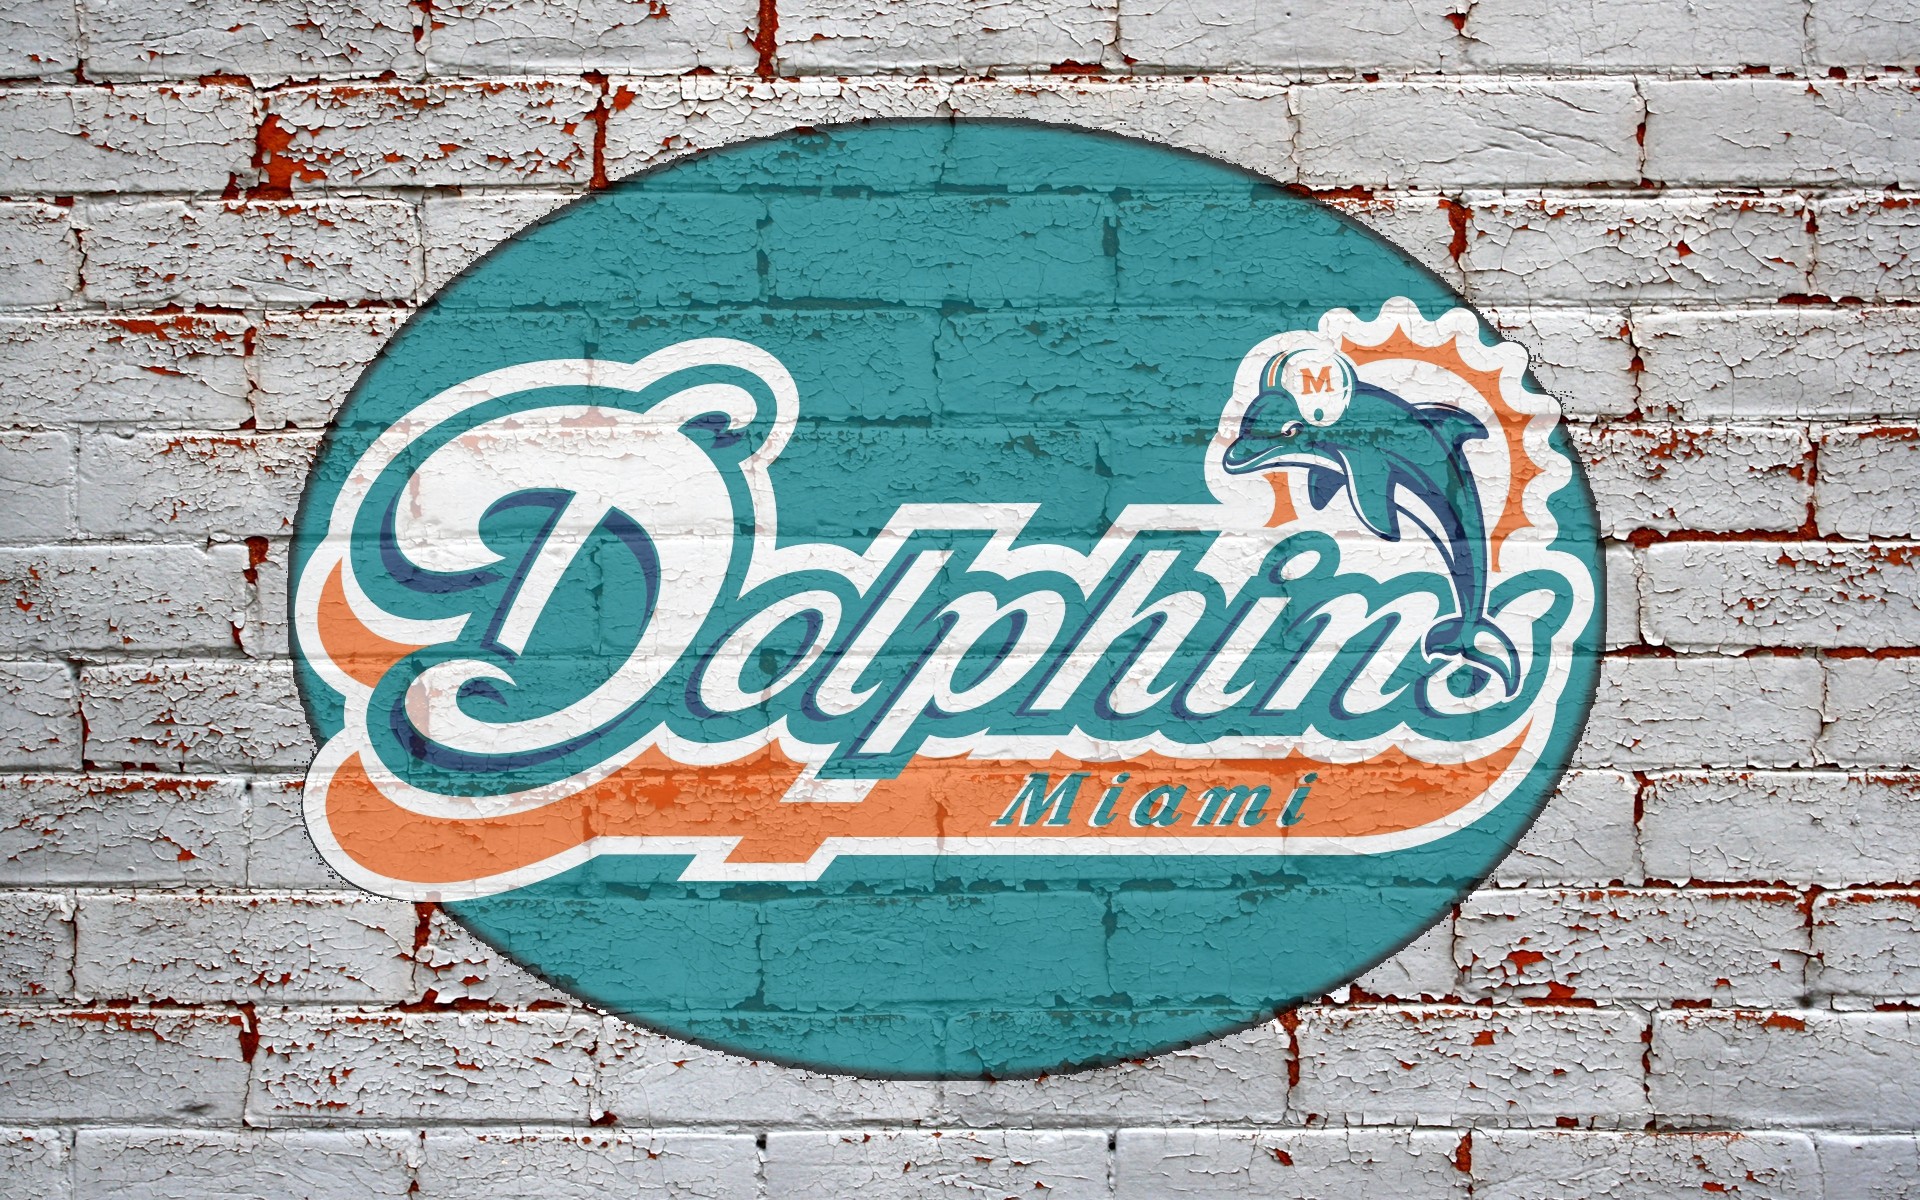 Miami Dolphins news